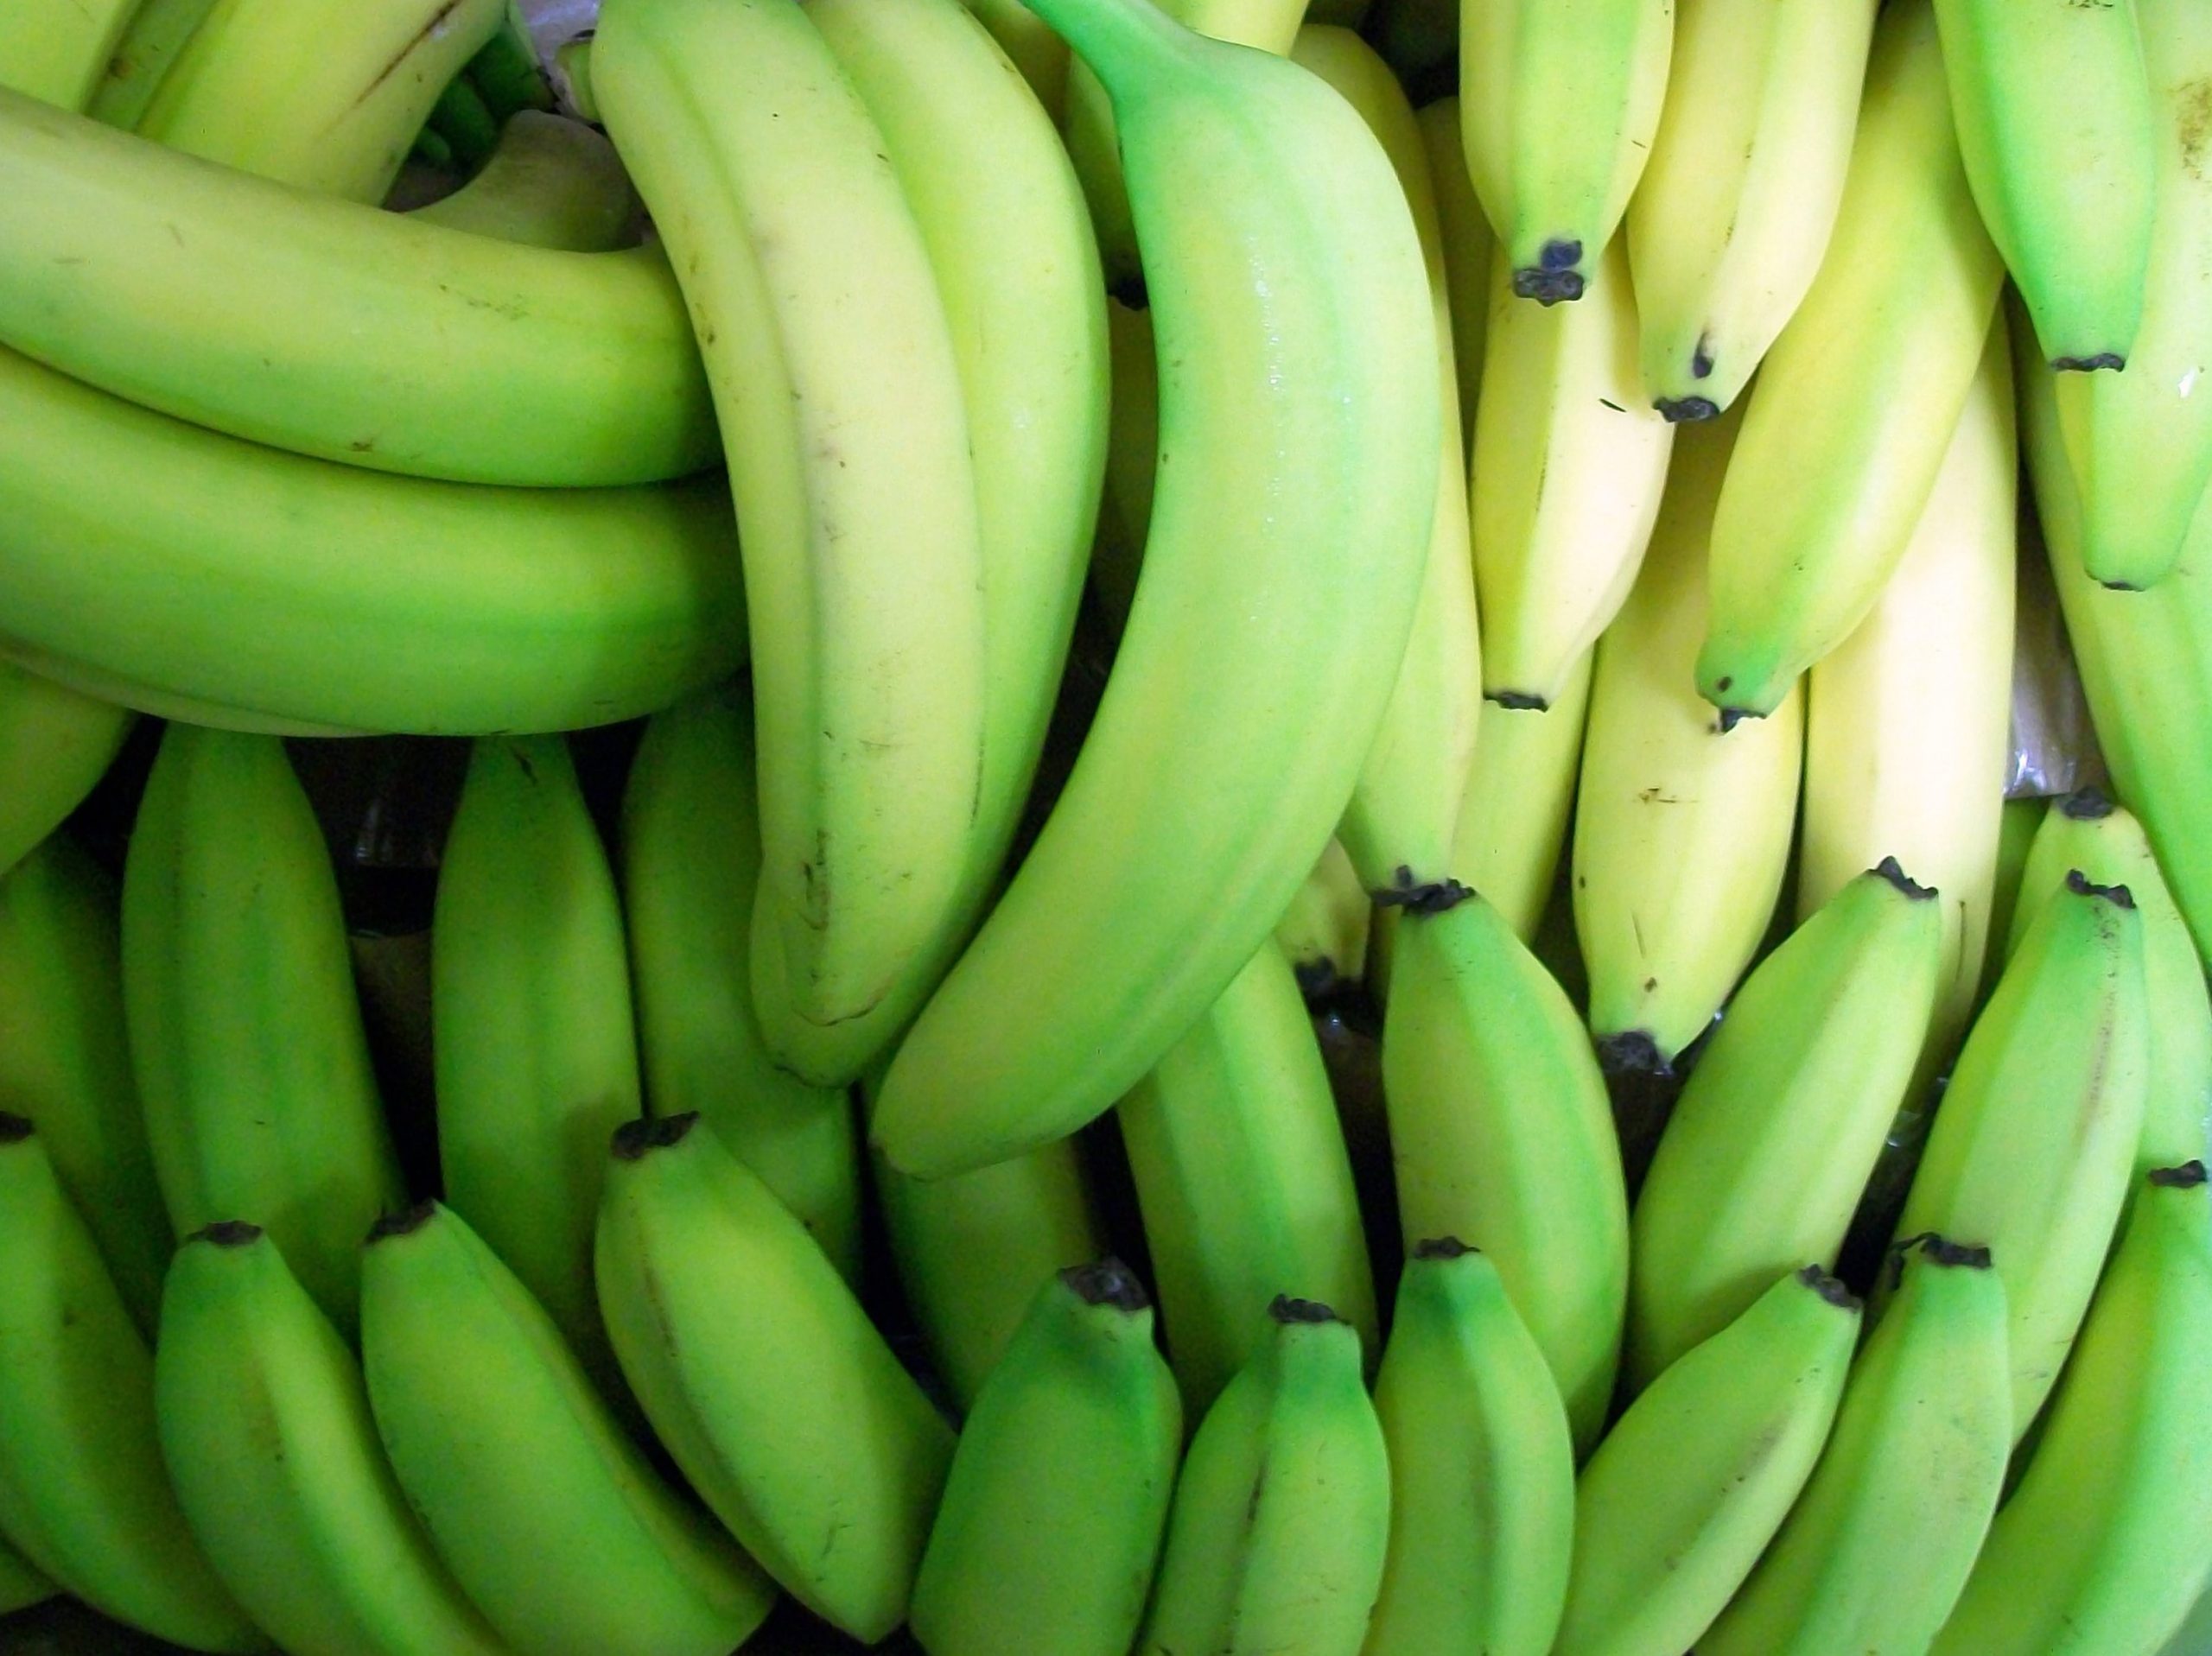 Beneficios del plátano verde - Beneficios del plátano verde